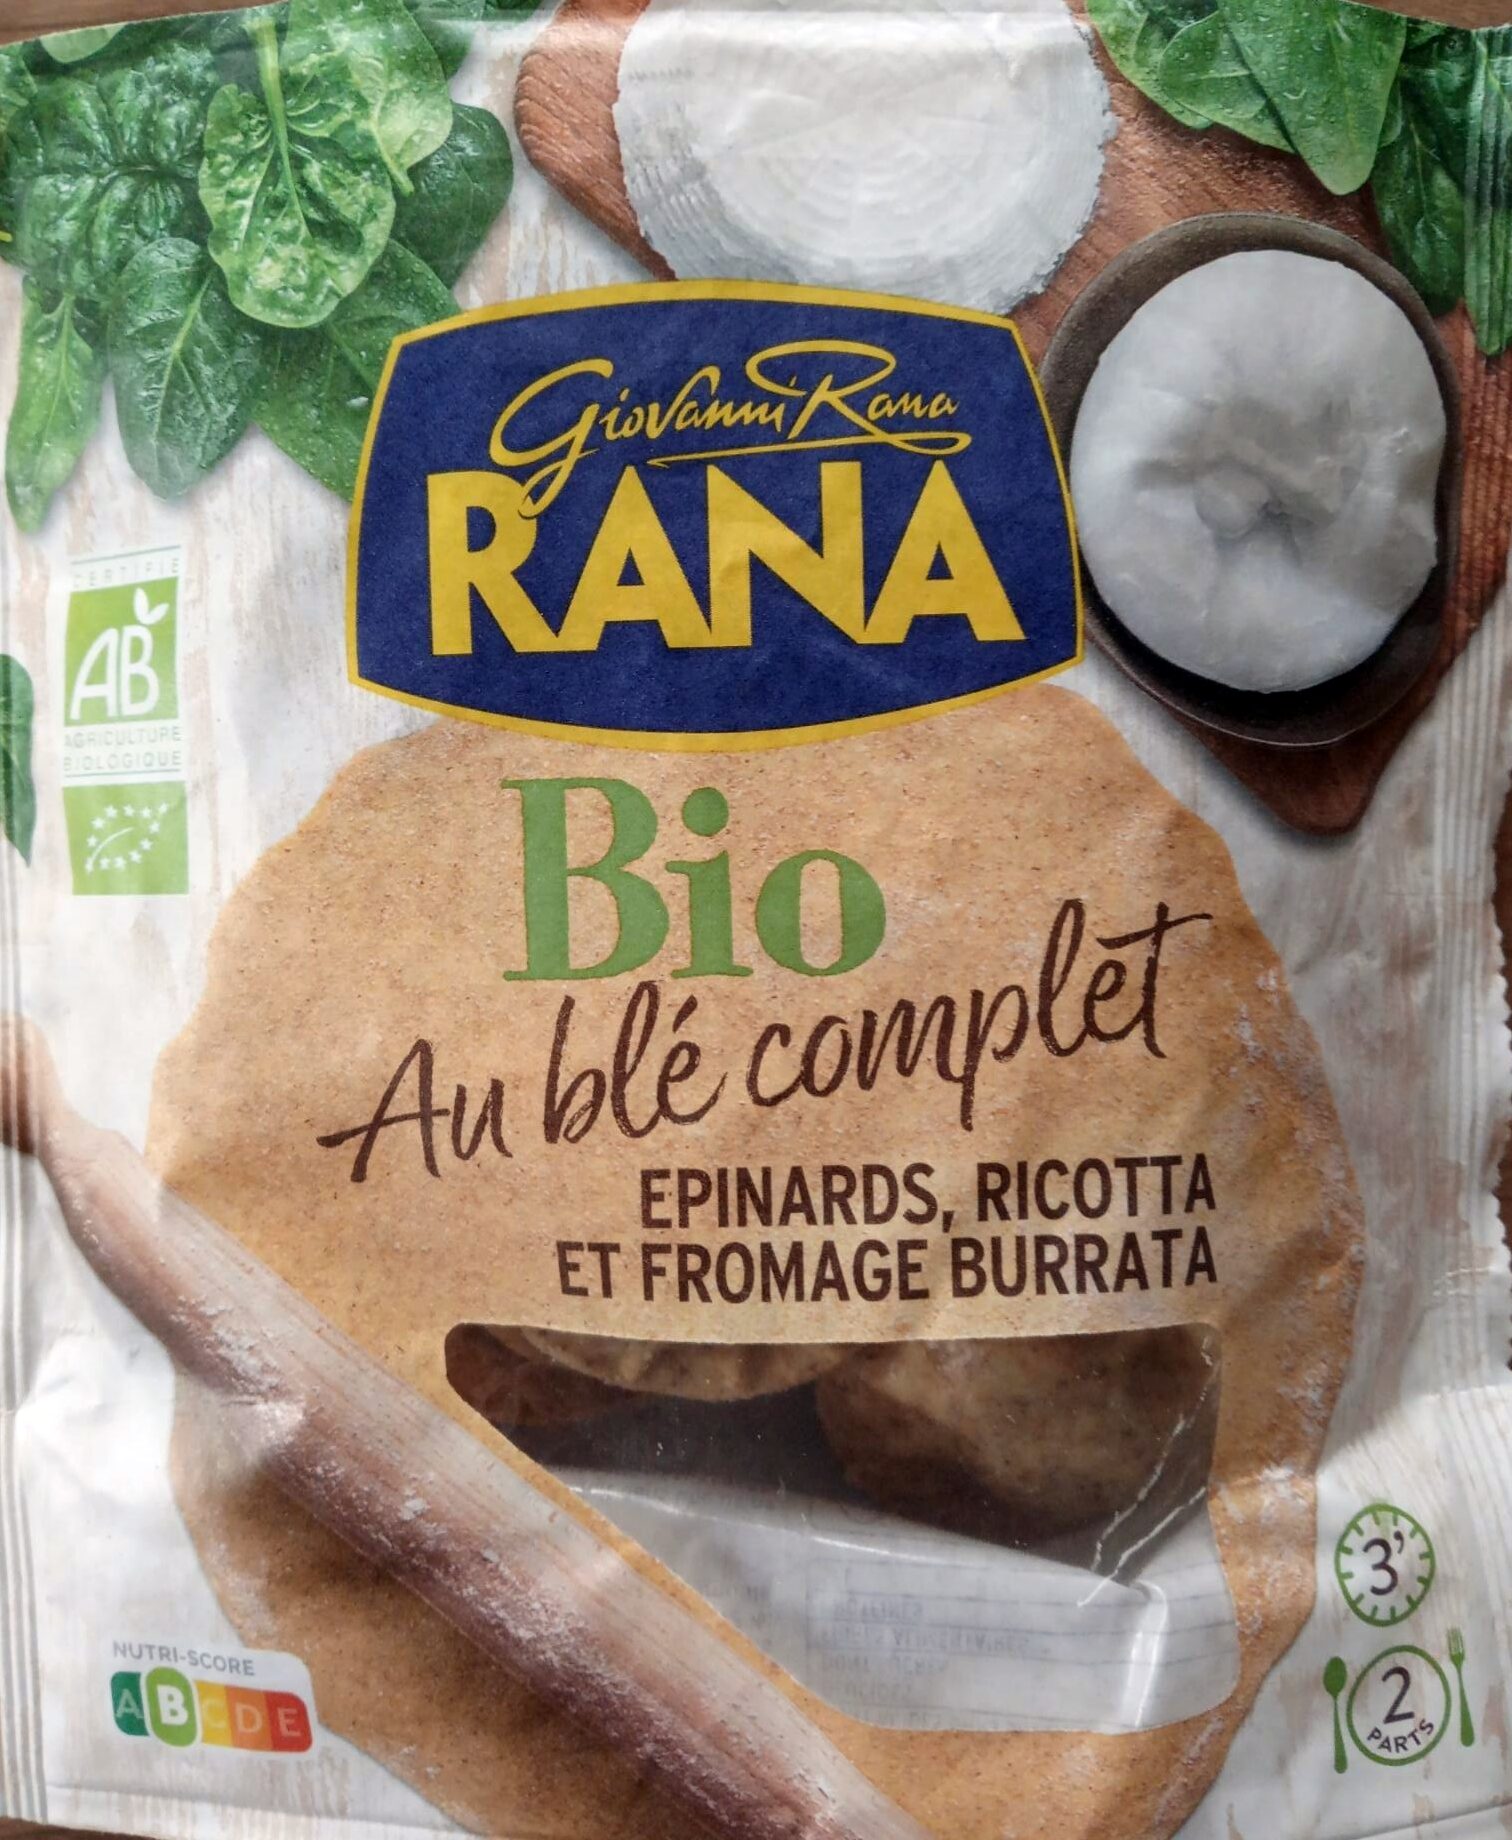 Ravioli bio au blé complet épinards ricotta burrata - Product - fr